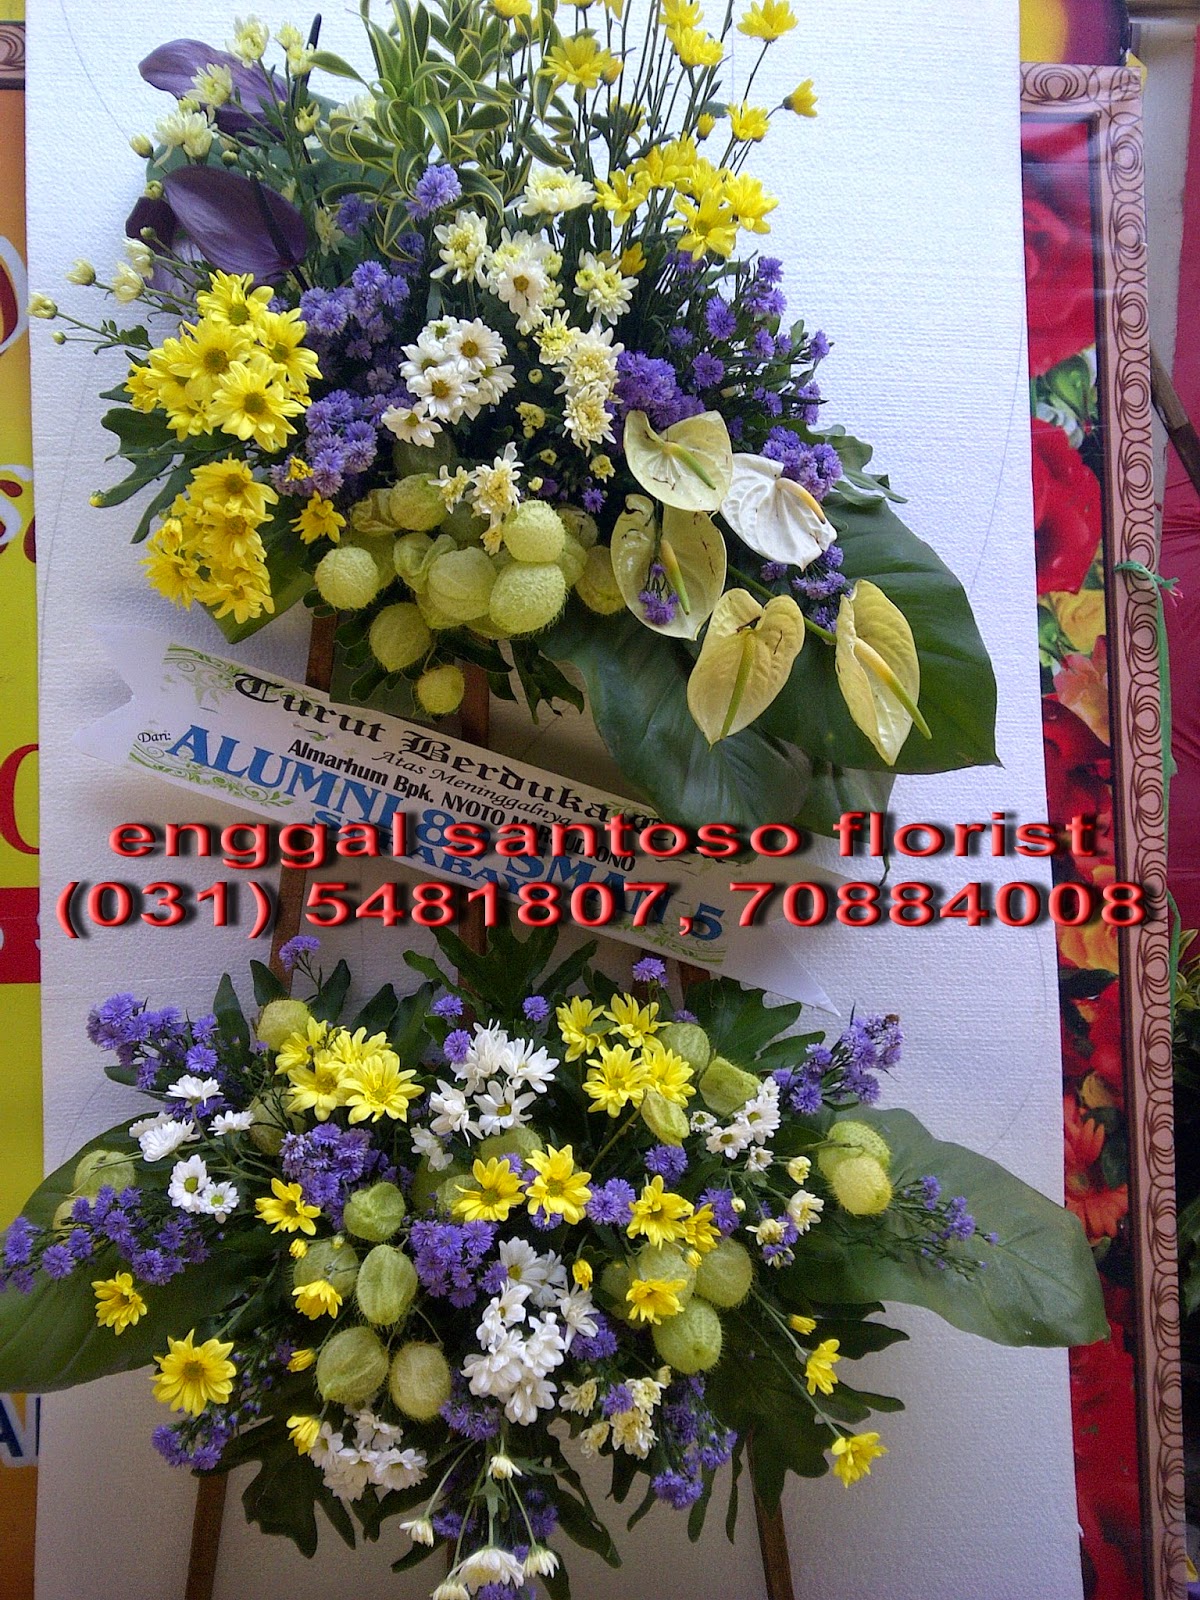 toko bunga gresik 085733331108: toko bunga gresik murah ...